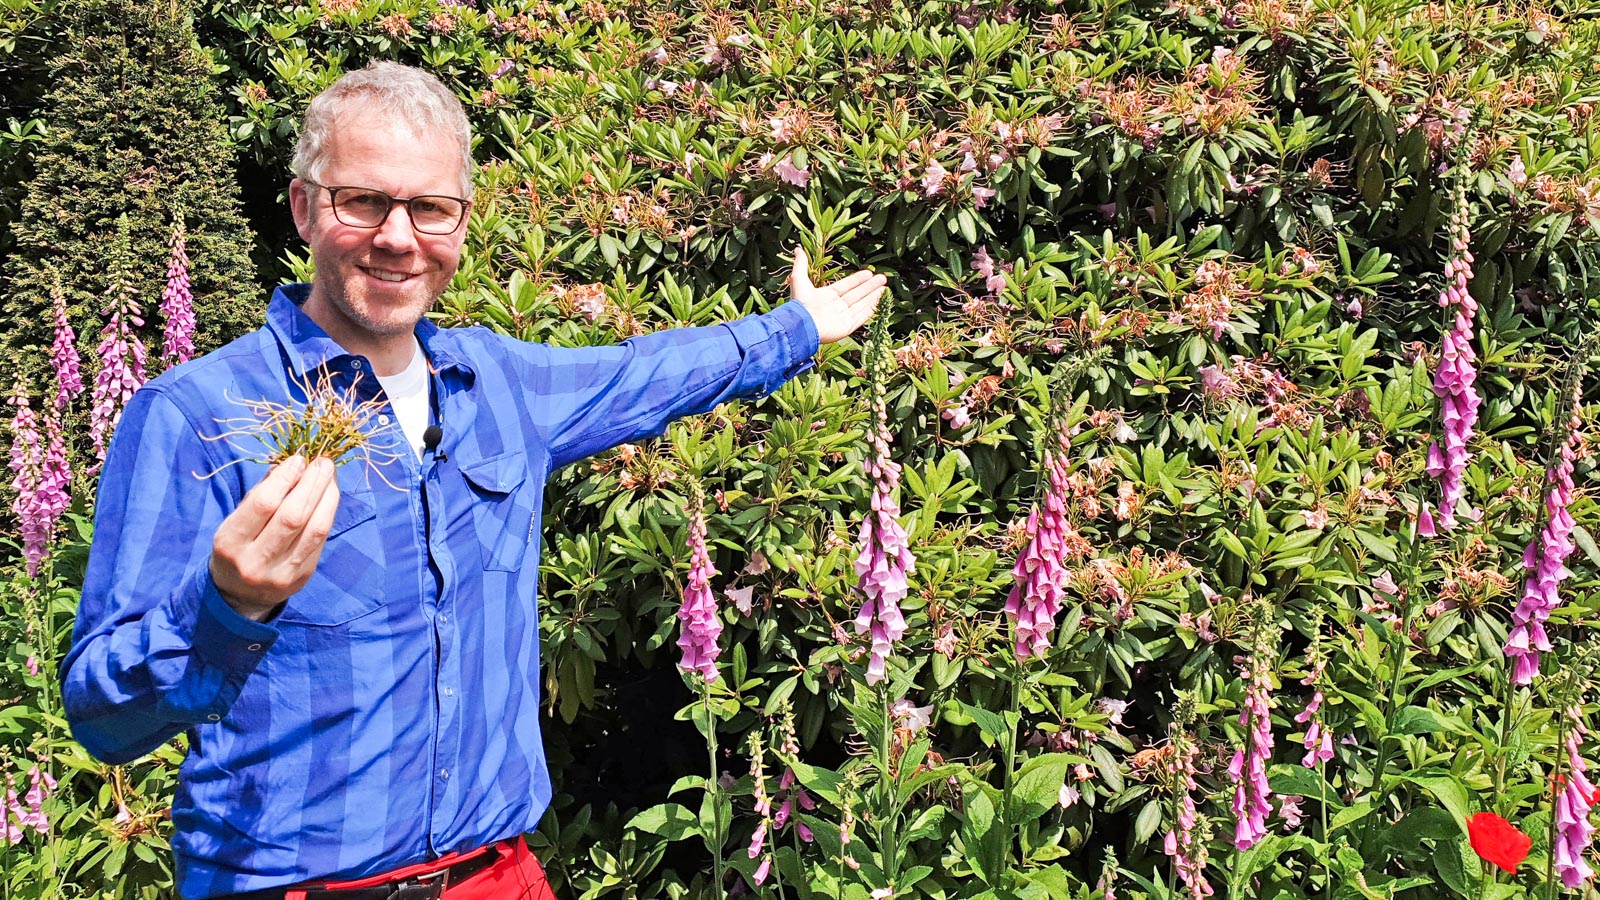 GArtenberater Philippe Dahlmann weist mit der Hand auf einen Rhododenron, in der anderen Hand hält er eine  ausgebrochene Blüte